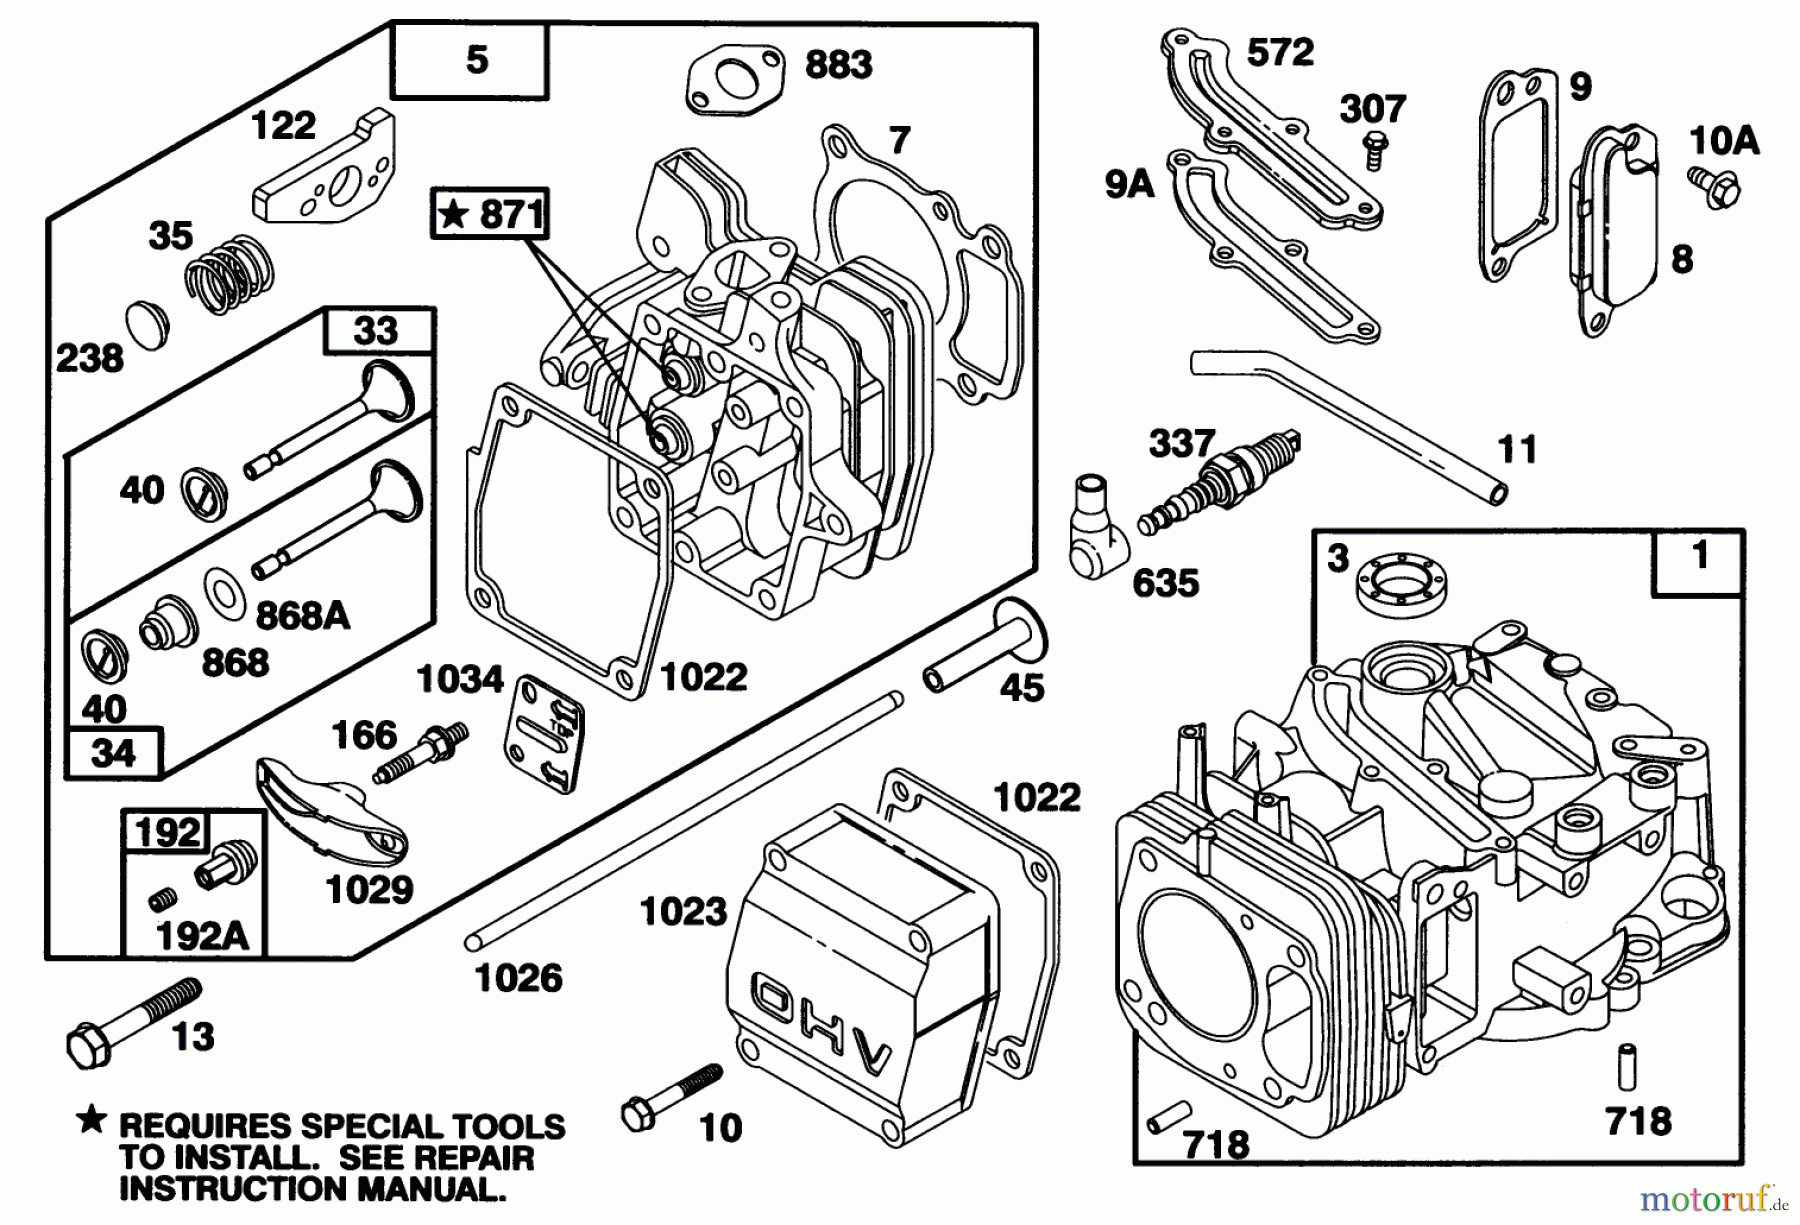  Toro Neu Mowers, Walk-Behind Seite 1 20761B - Toro Lawnmower, 1993 (39000001-39999999) ENGINE GTS 150 #1